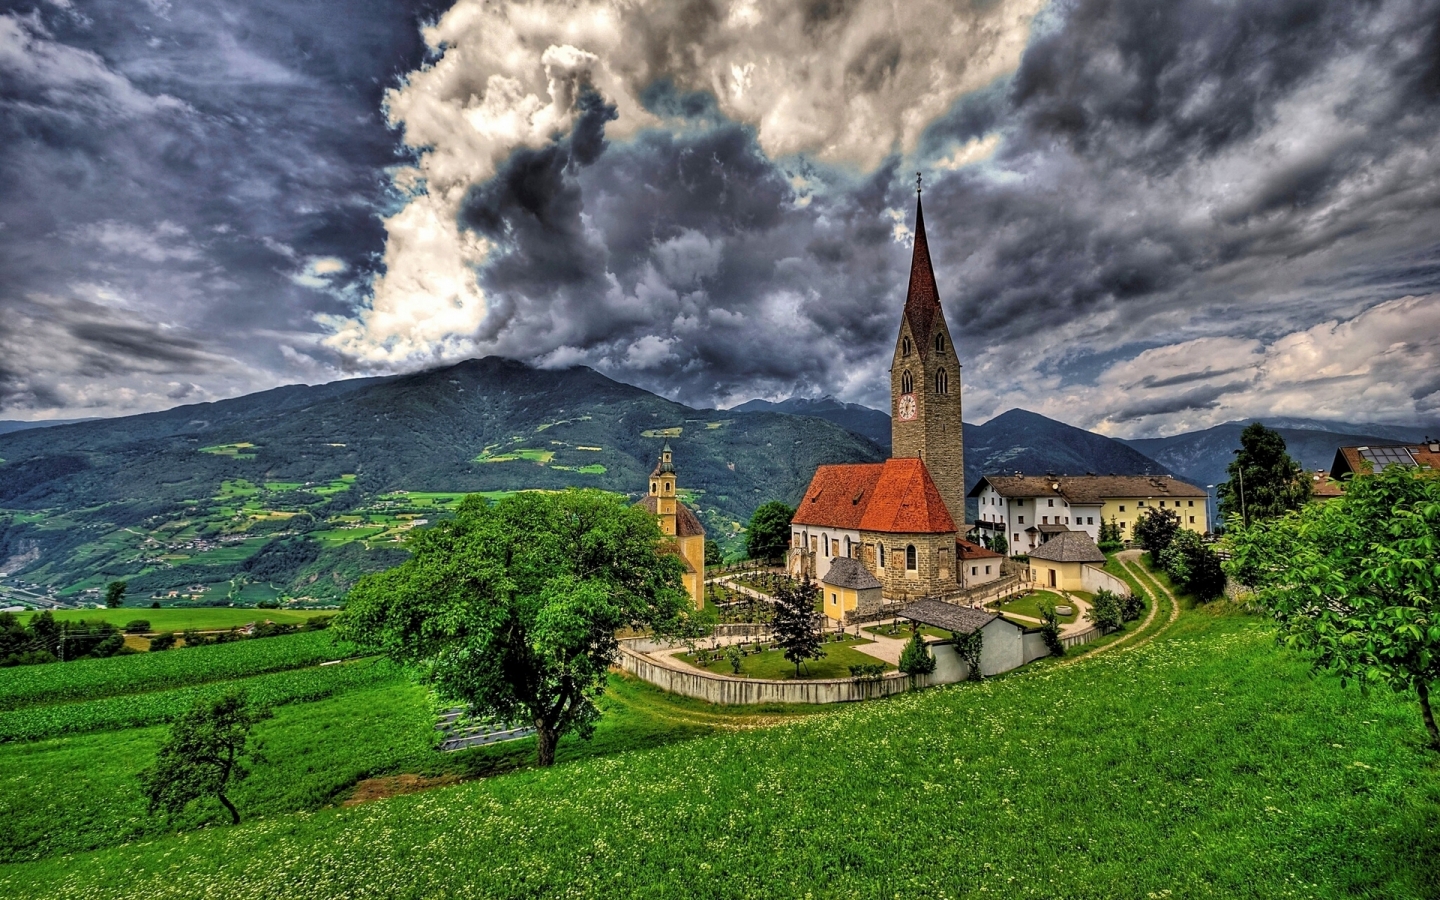 Saint Michael Church Brixen for 1440 x 900 widescreen resolution